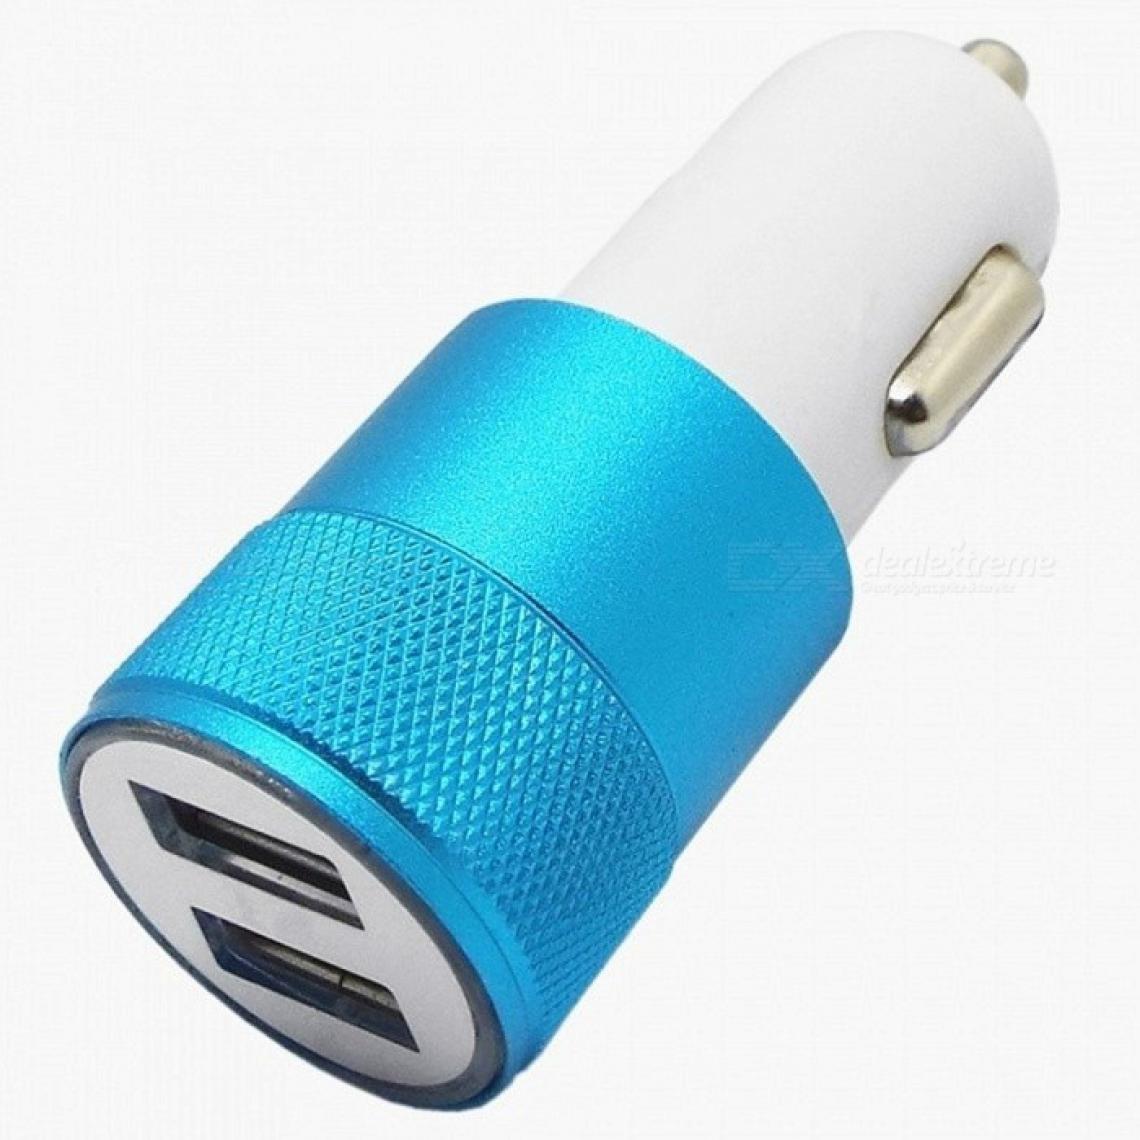 Shot - Double Adaptateur Prise Allume Cigare USB pour XIAOMI Redmi 7 Smartphone 2 Ports Voiture Chargeur Couleurs (BLEU) - Chargeur Voiture 12V